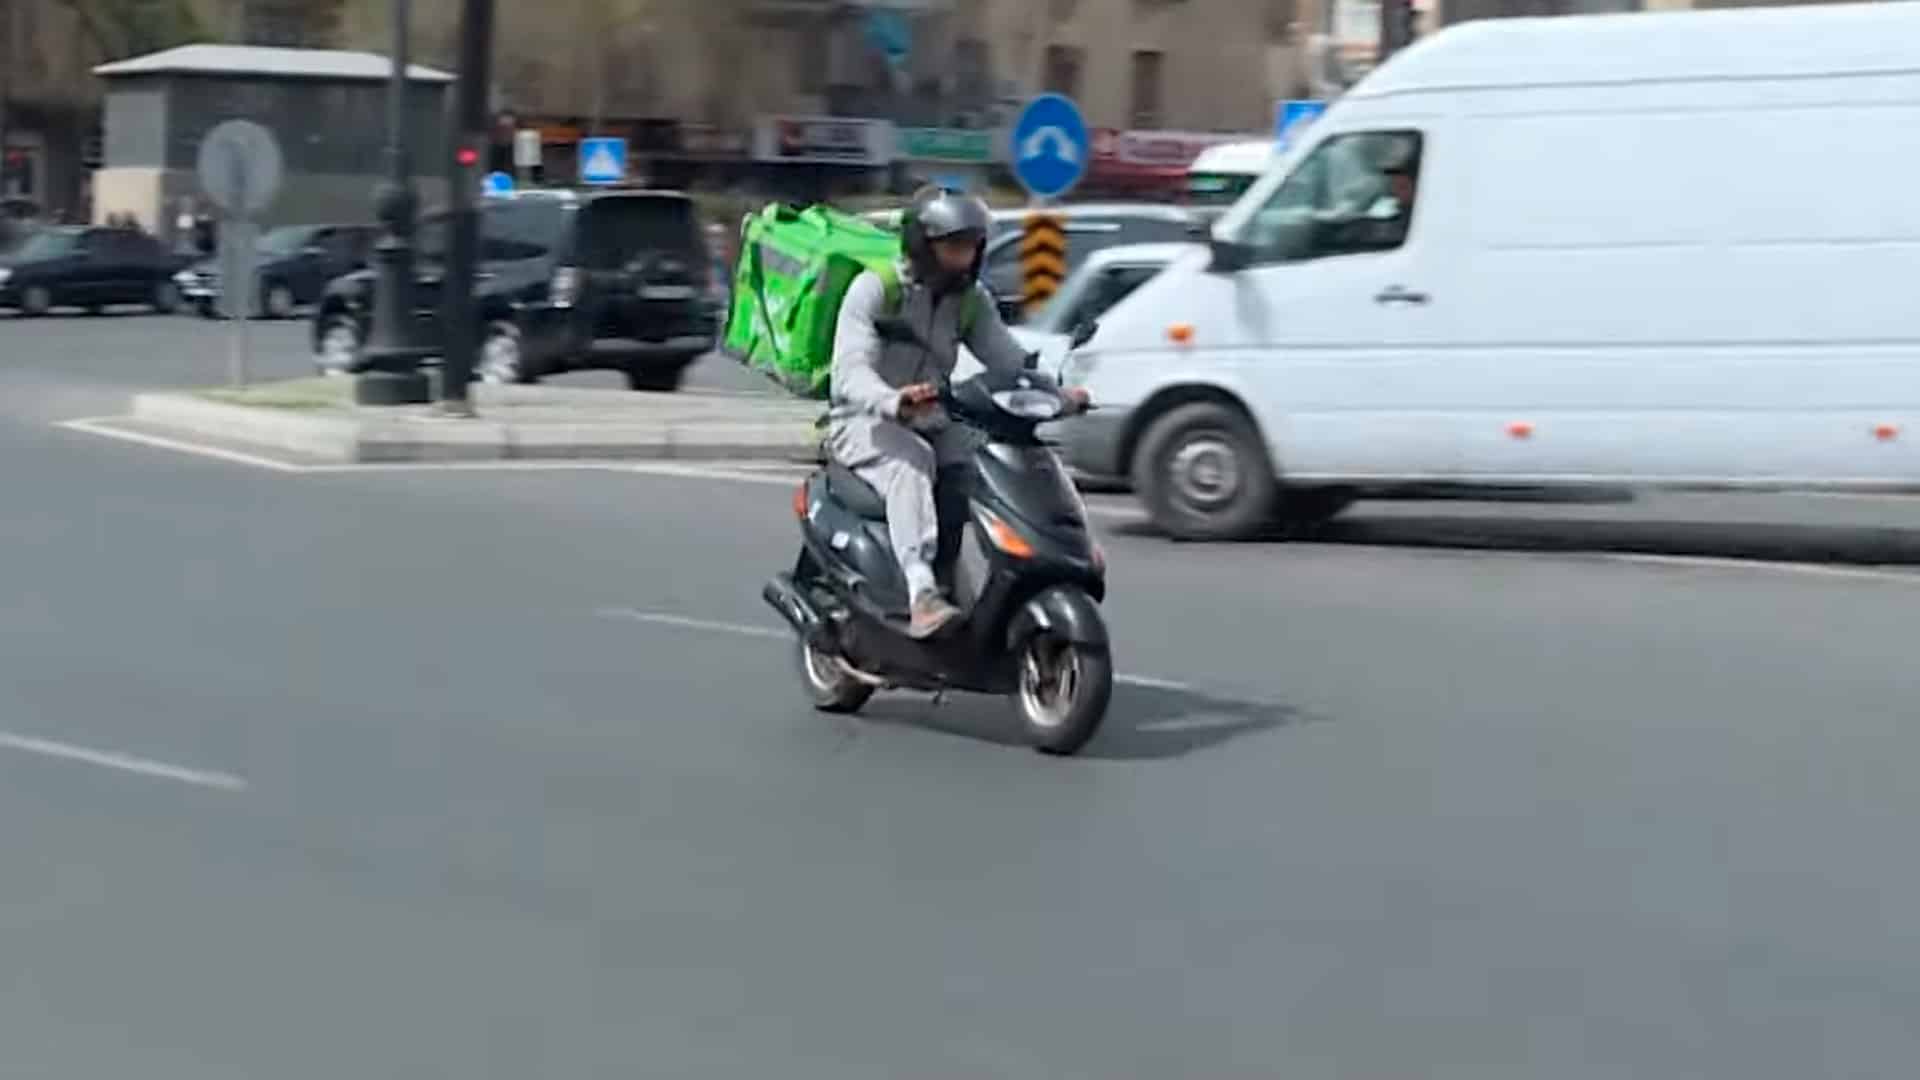 Sürəti saatda 50 km-dən çox olan motosikllər üçün idxal gömrük rüsumu müəyyənləşib